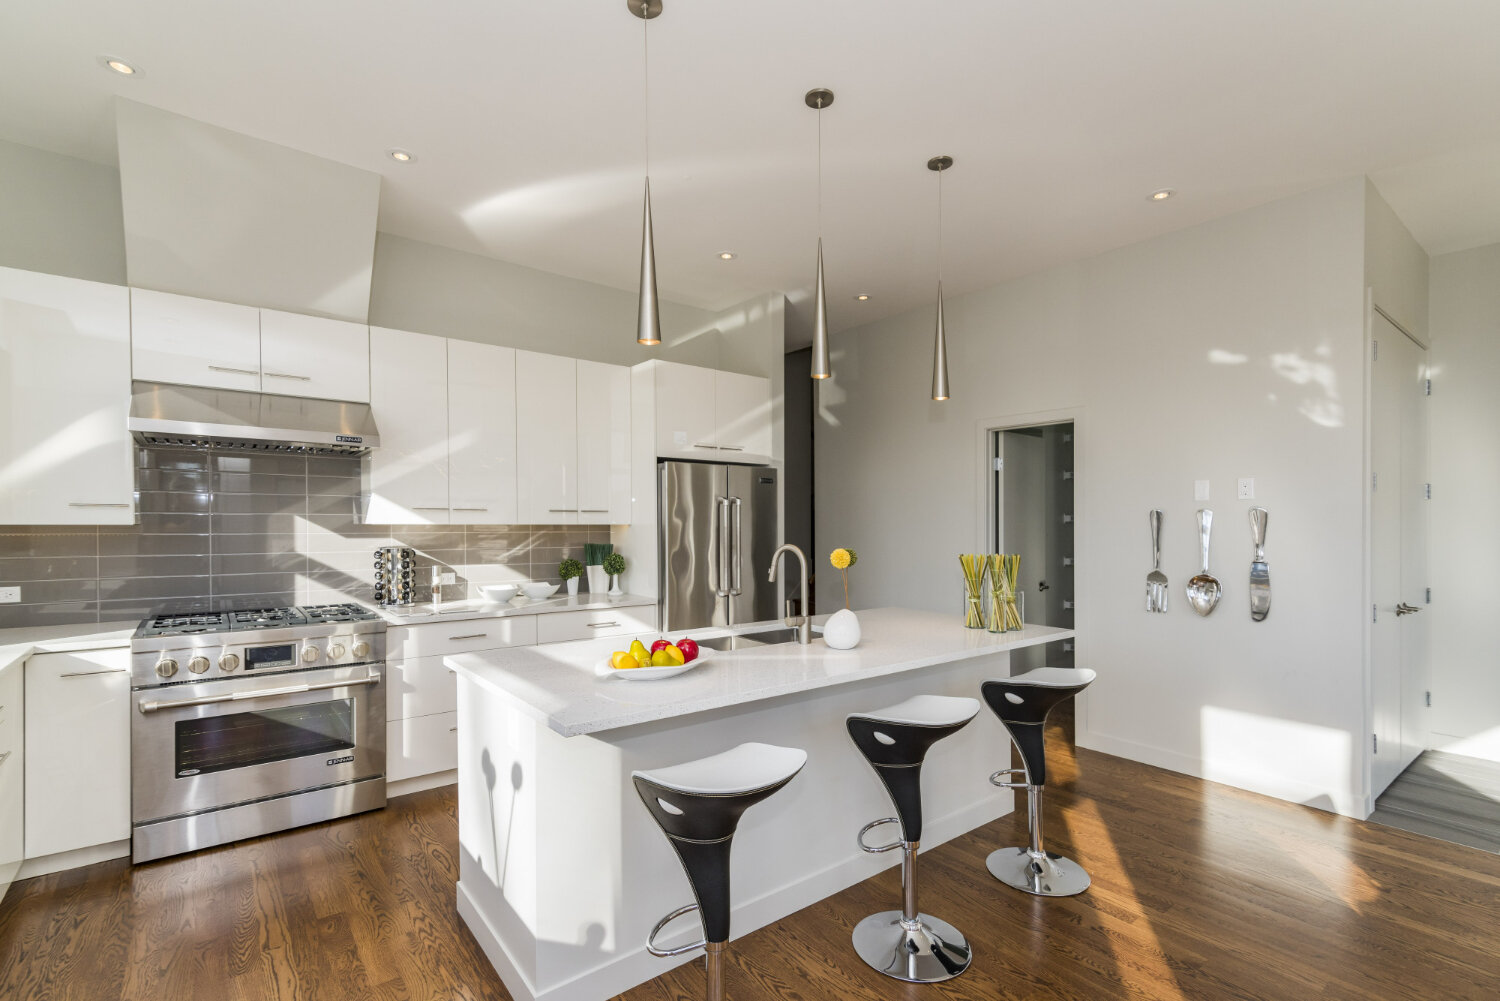 modern house kitchen with minimalist kitchen design